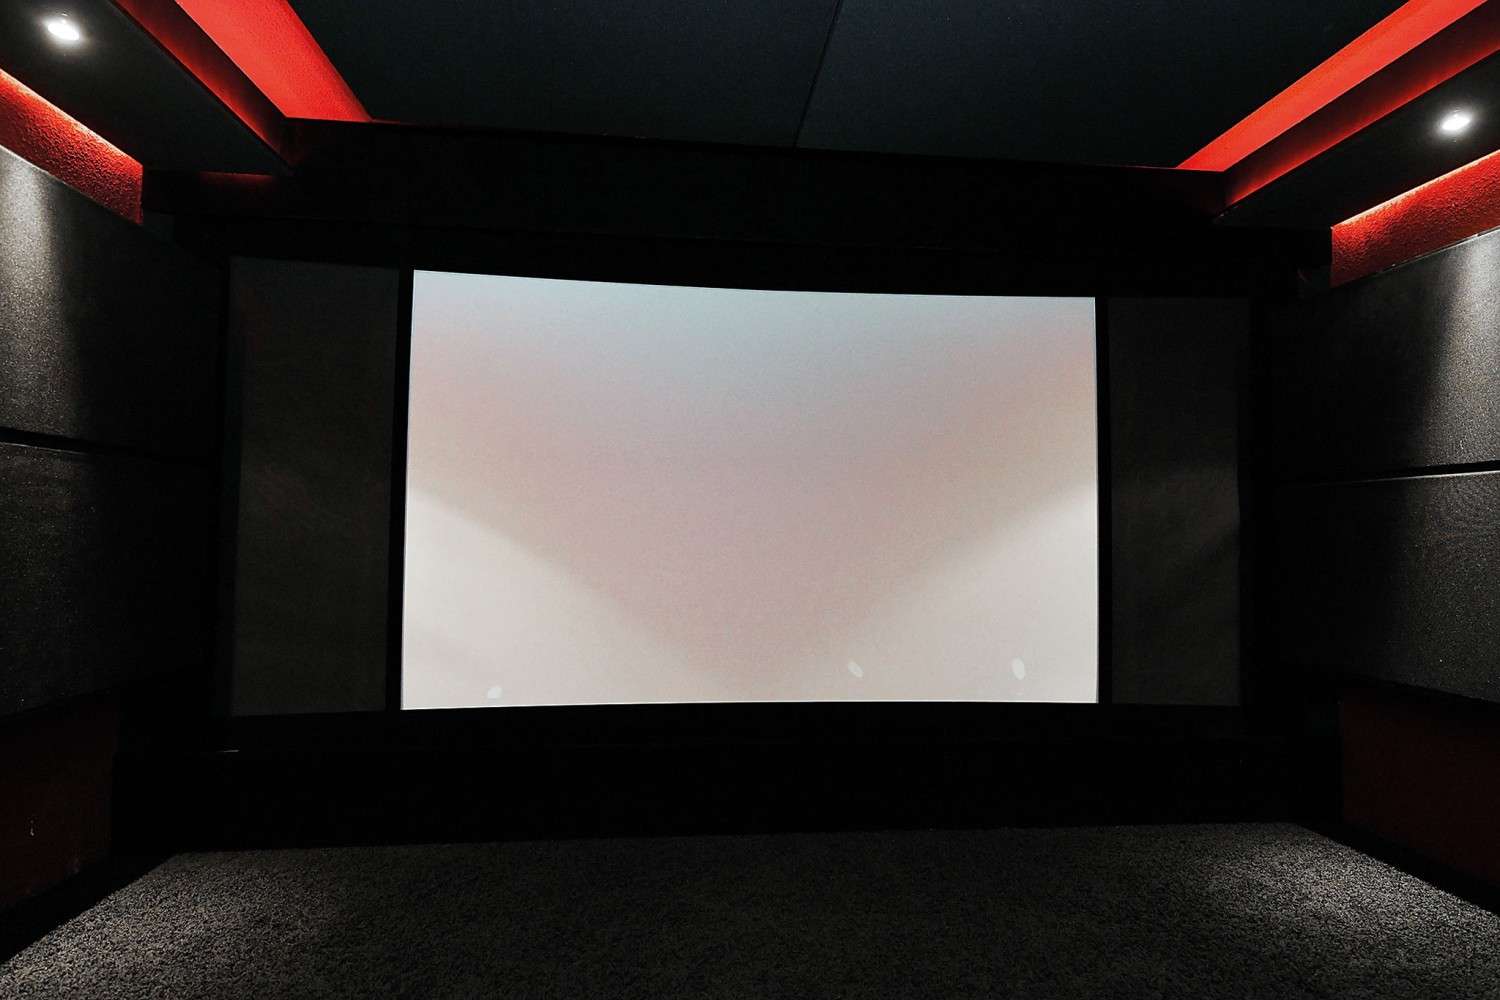 Ratgeber K4 HOME CINEMA: Akustisch optimiertes 7.1-Kino mit HDR, Curved-Screen und Double-Bass-Array - News, Bild 10